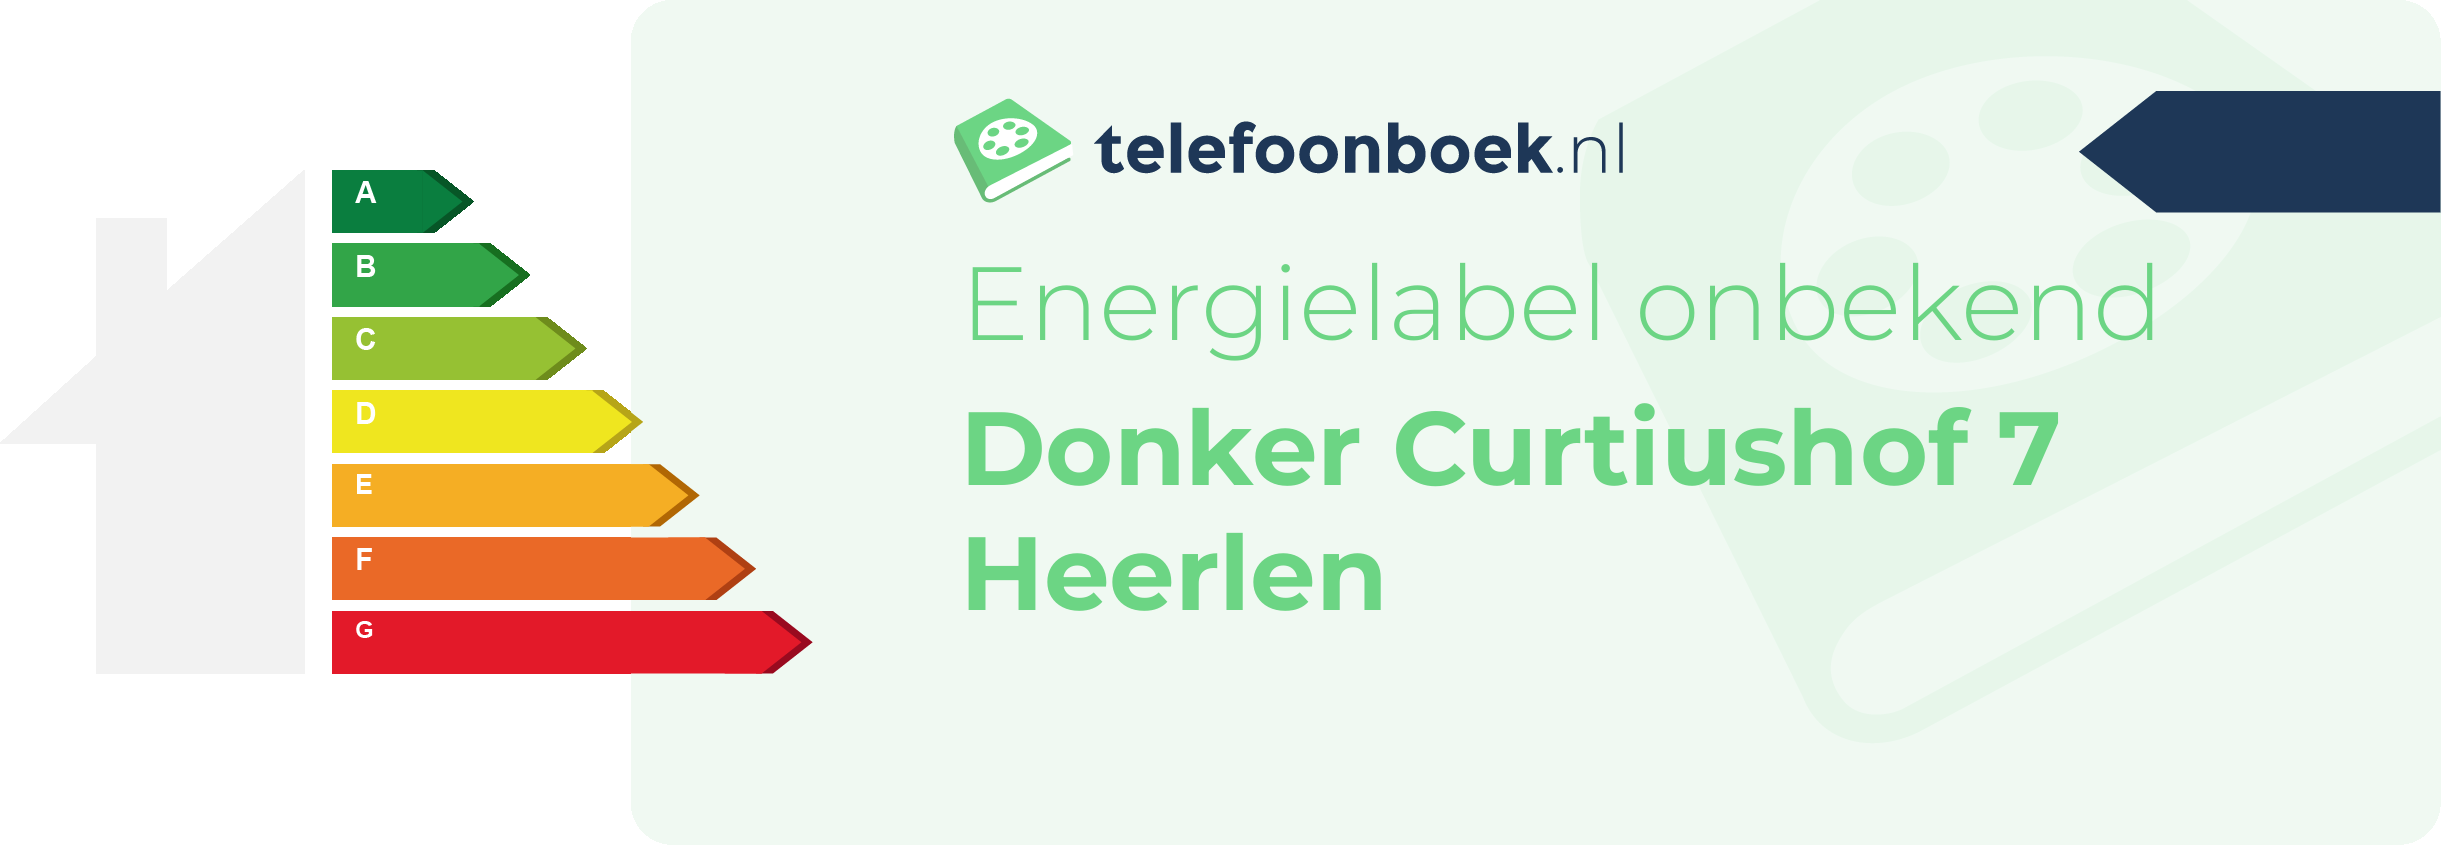 Energielabel Donker Curtiushof 7 Heerlen